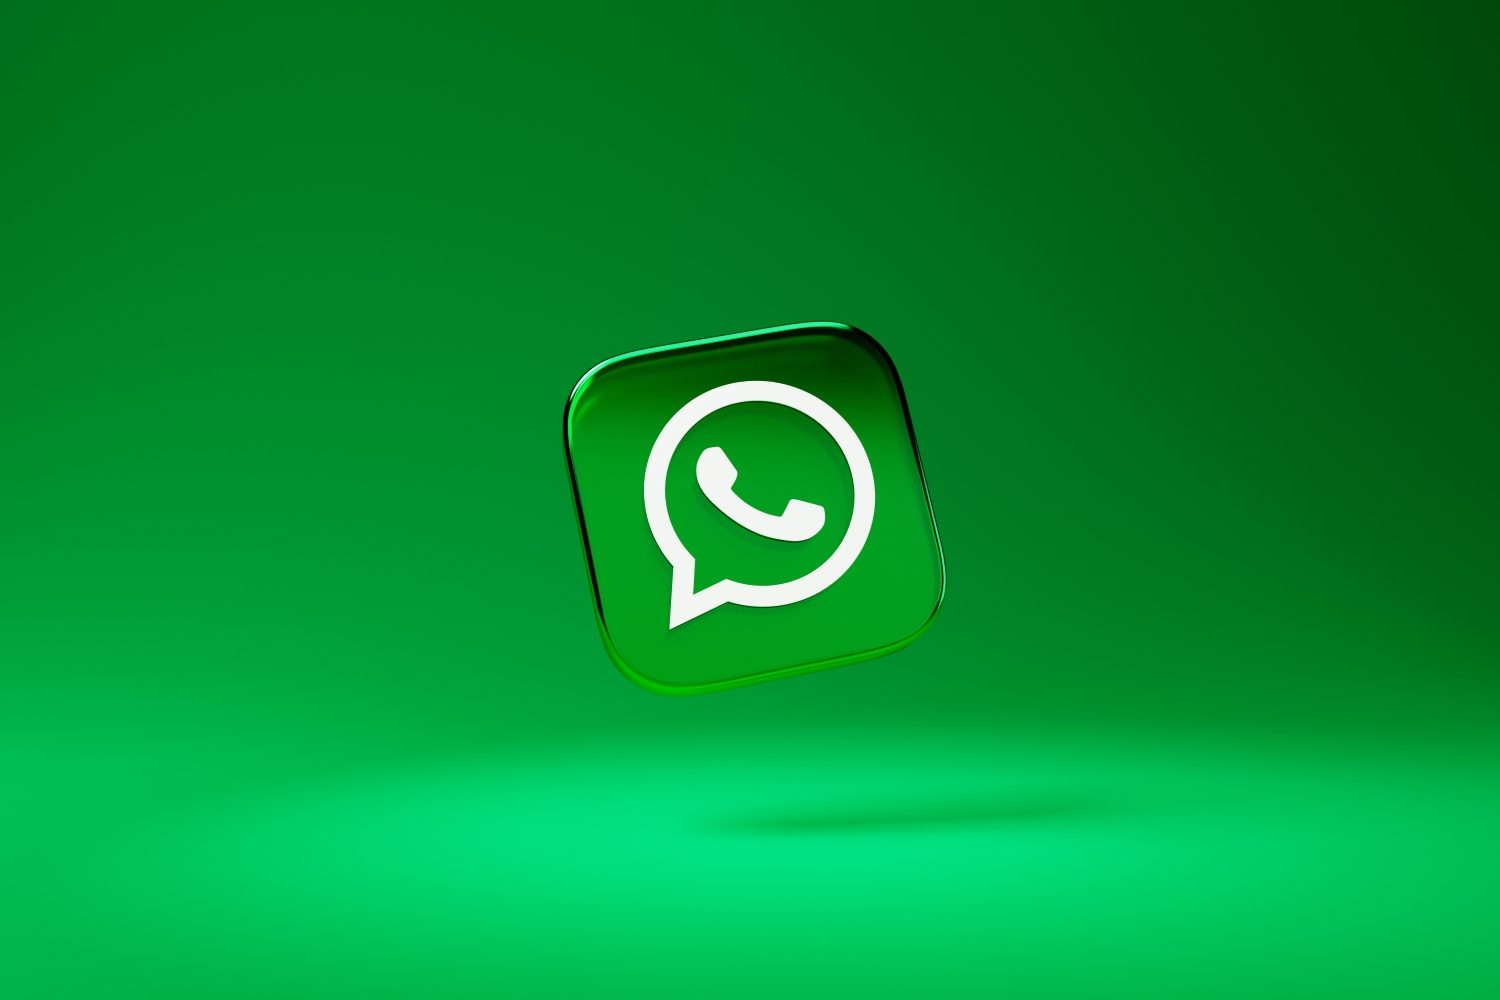 Les nouvelles conditions d’utilisation de WhatsApp devront être acceptées après le 11 avril (ou arrêter WhatsApp)